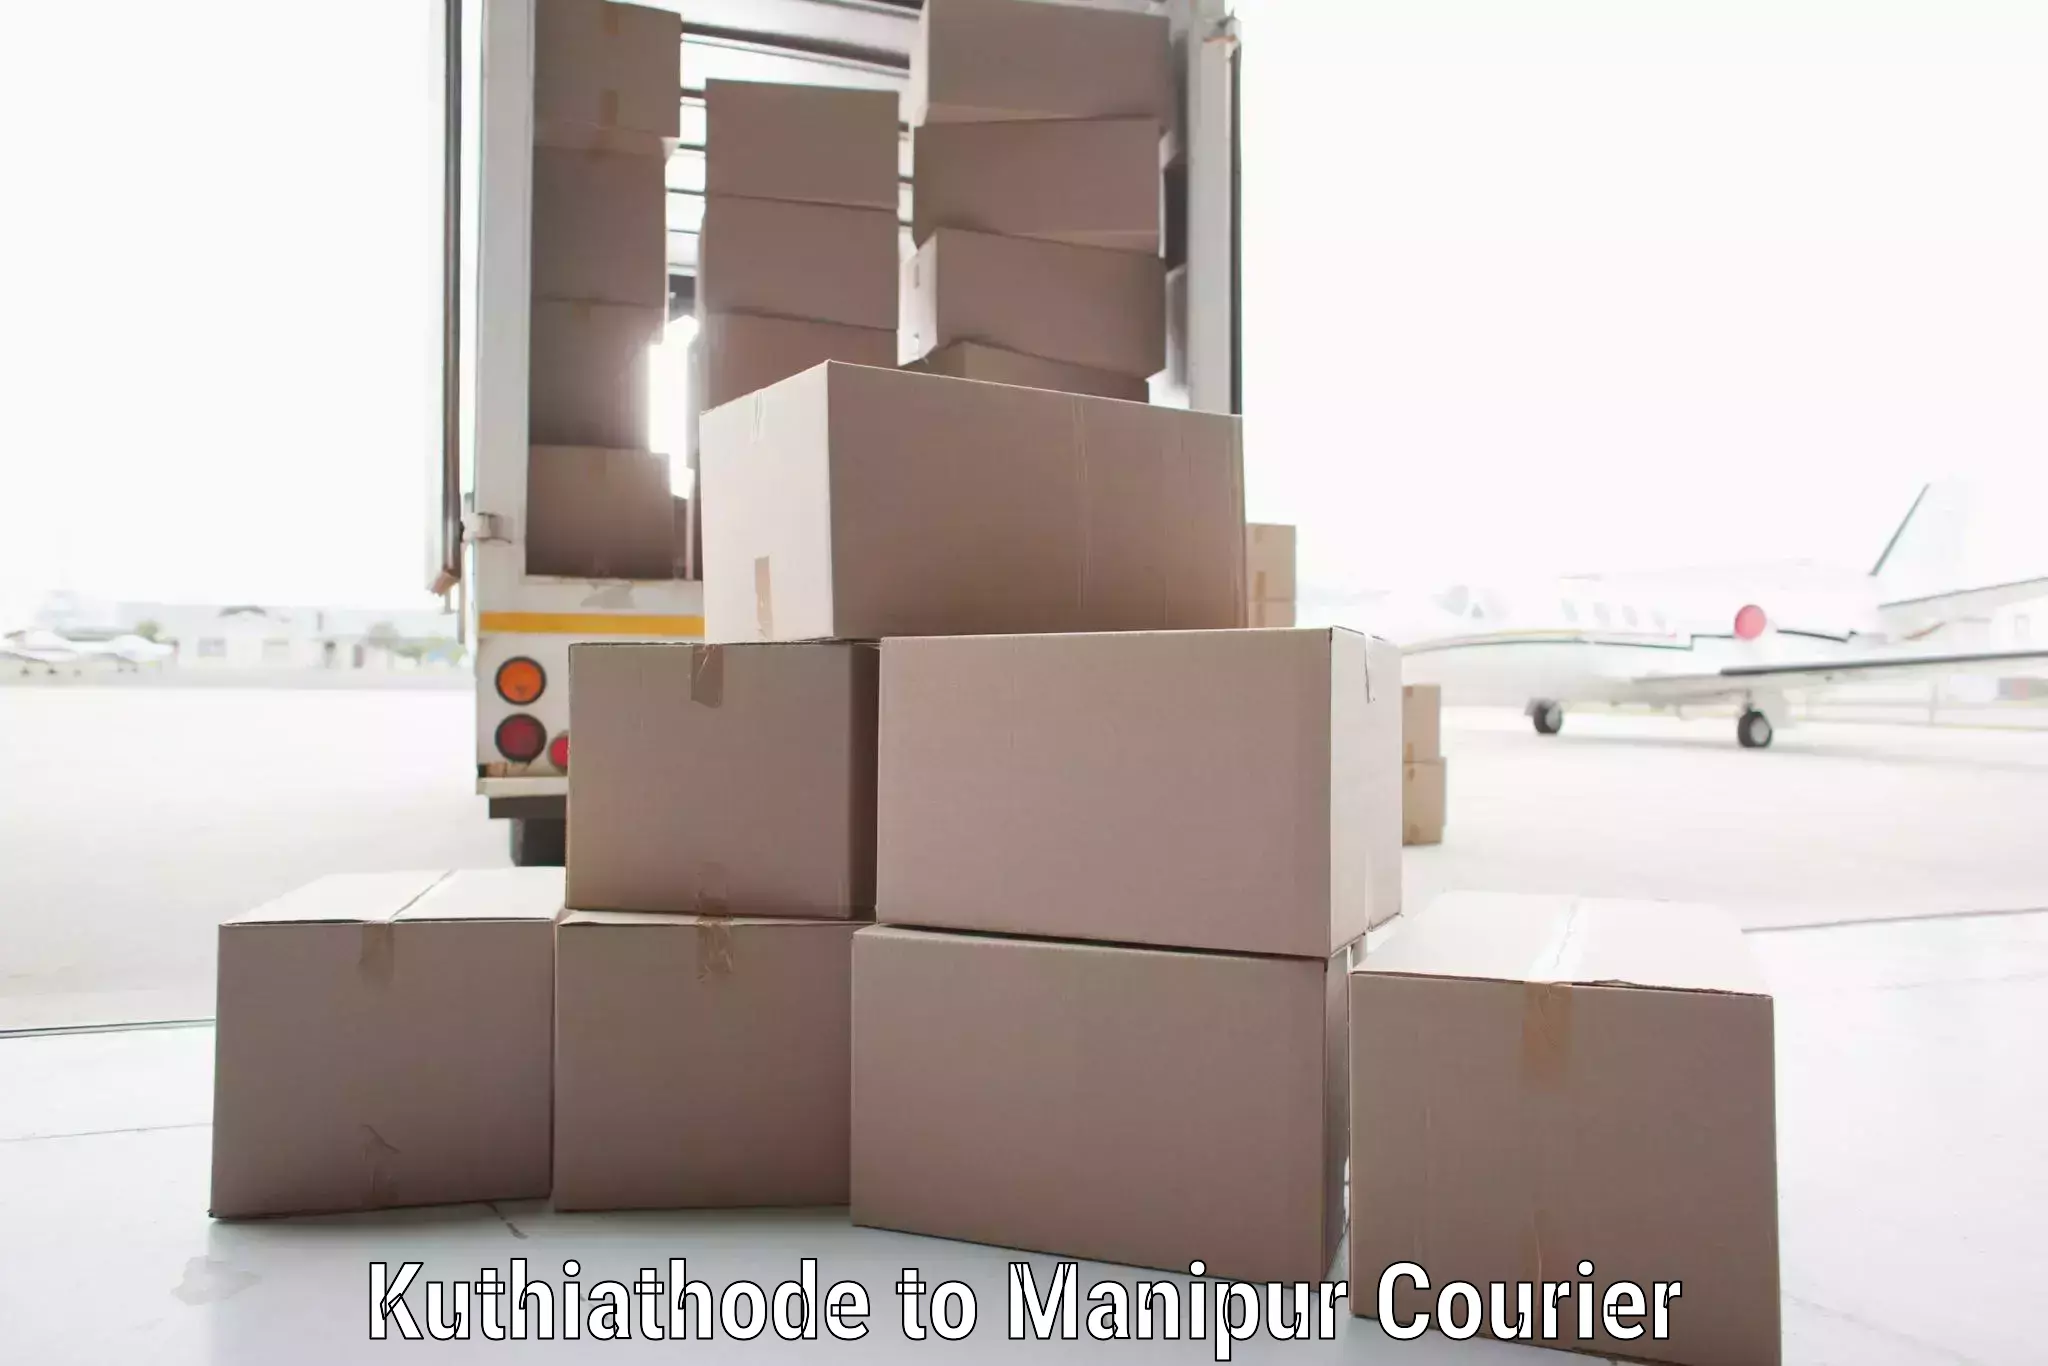 High-speed parcel service in Kuthiathode to Churachandpur